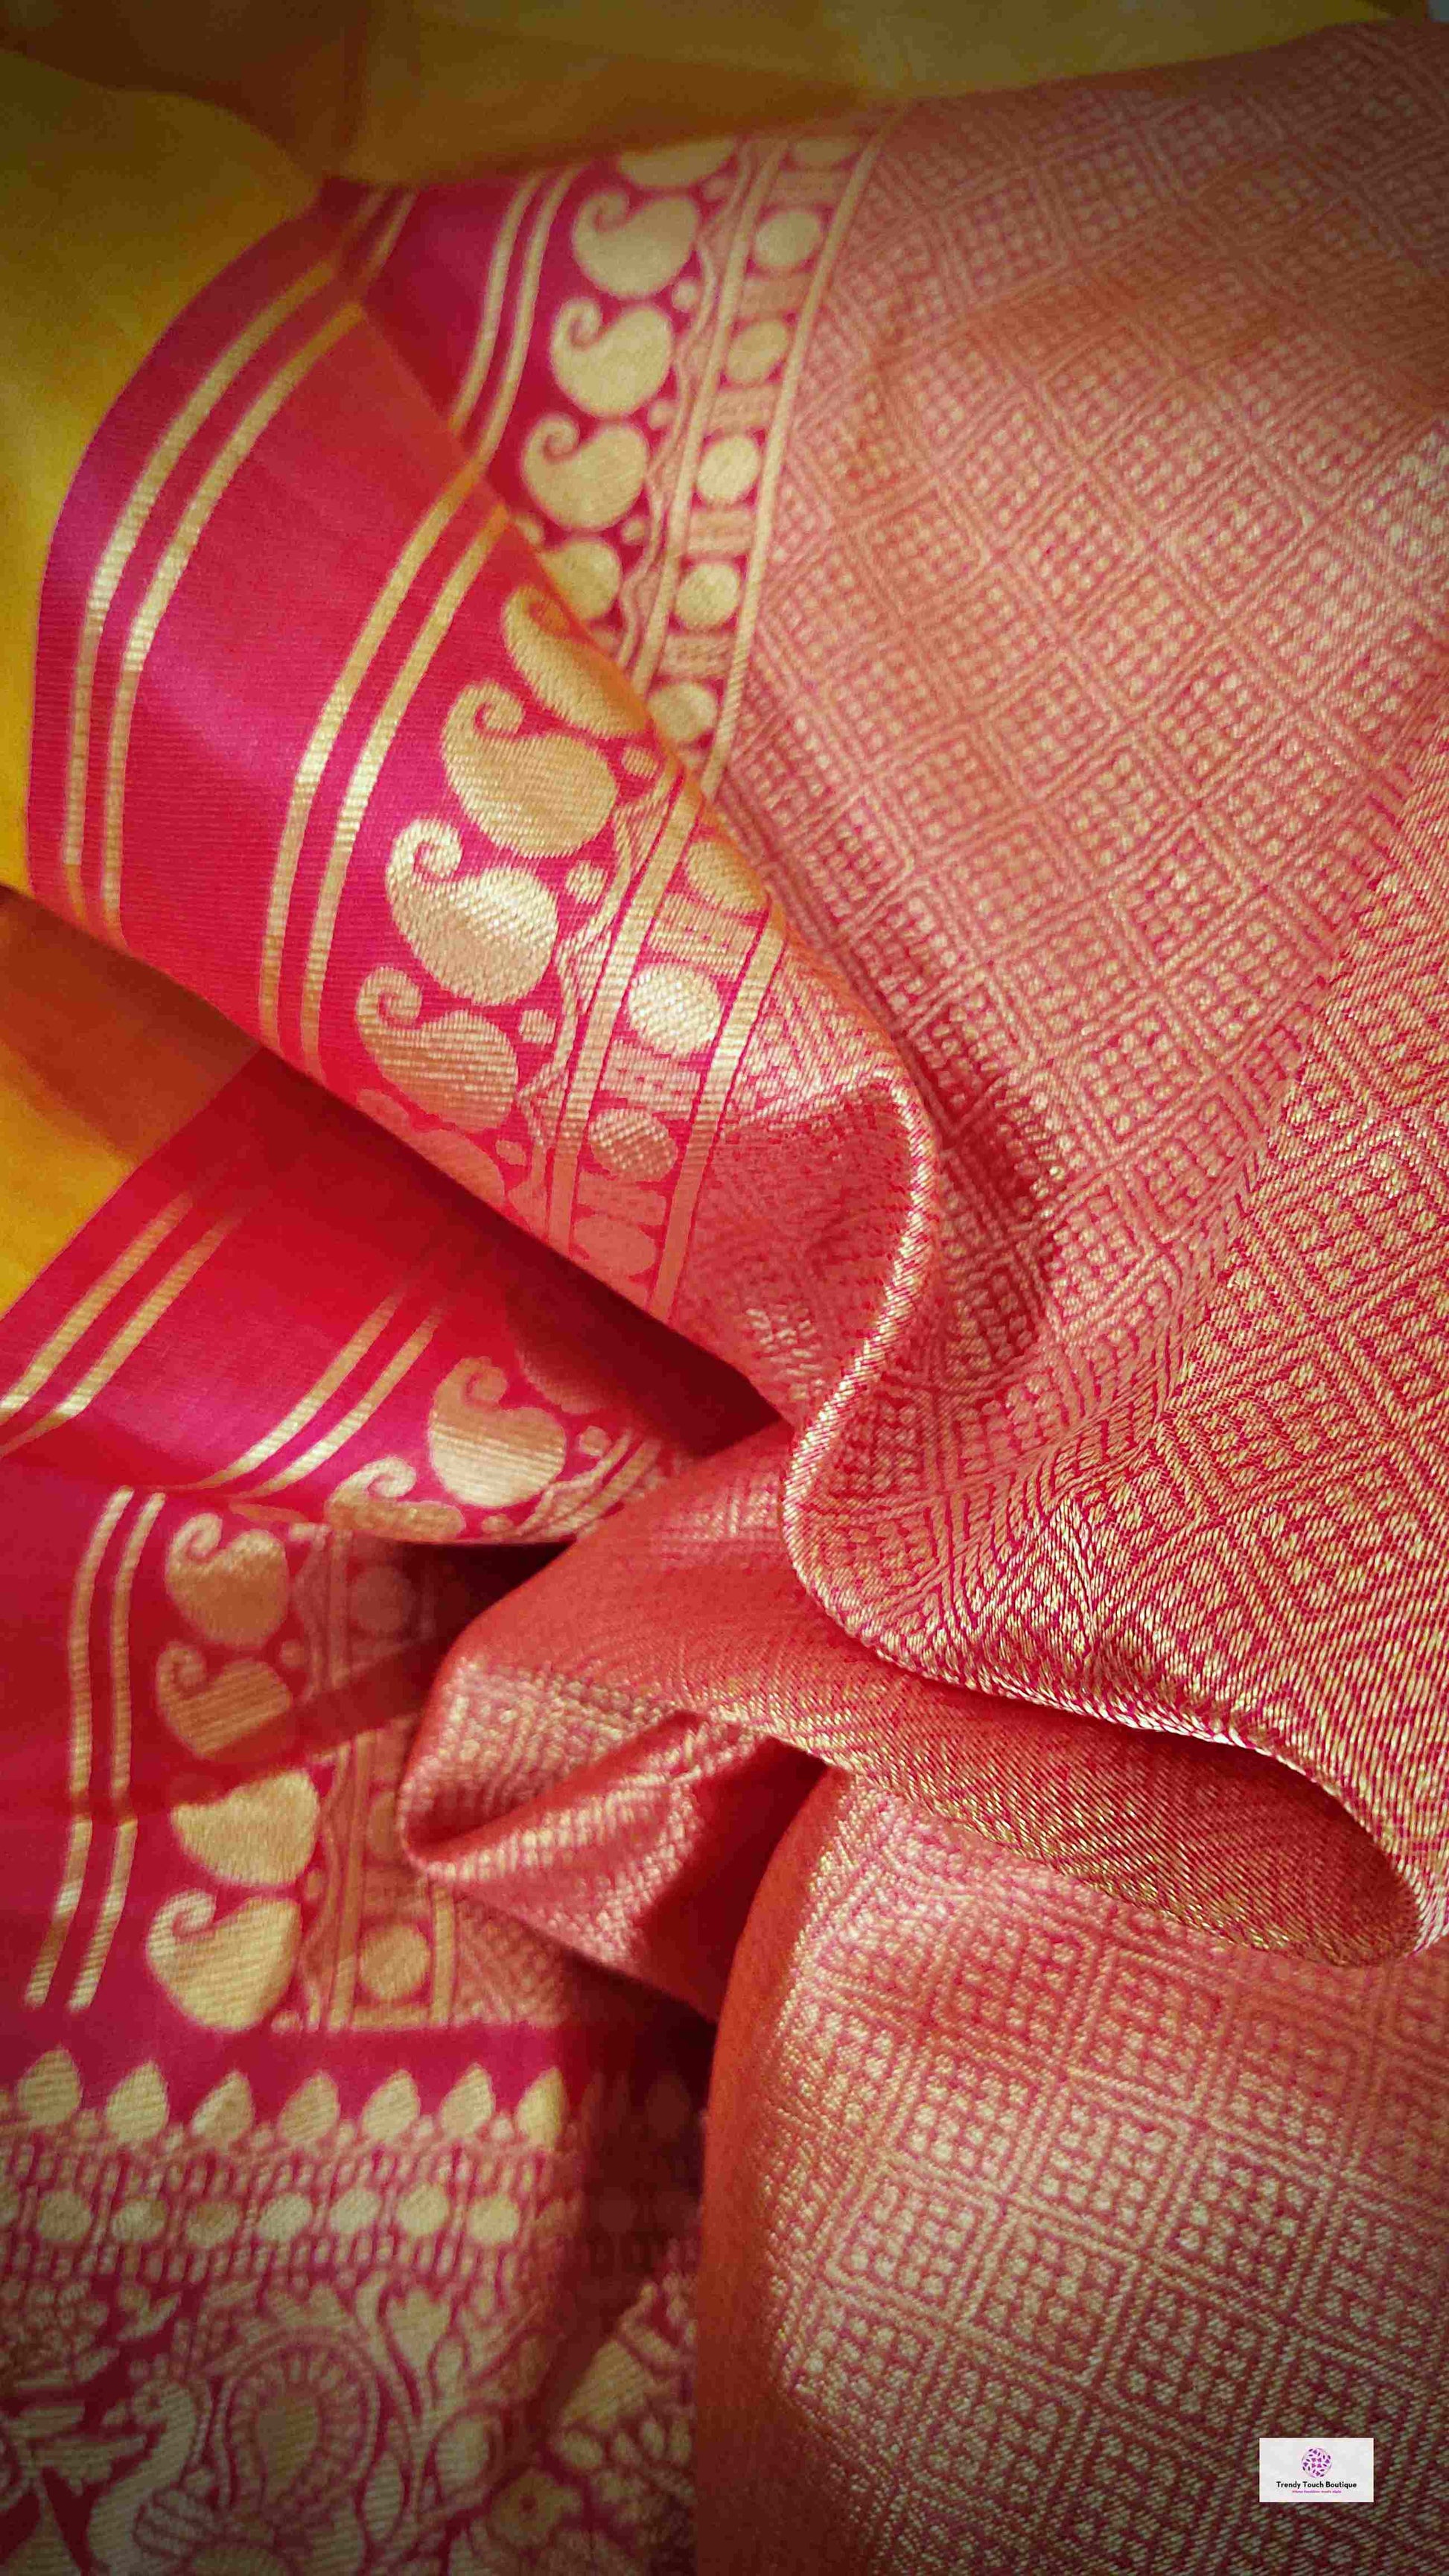 lichi silk saree 1,999 festive saree for durga puja and navratri yellow pink saree